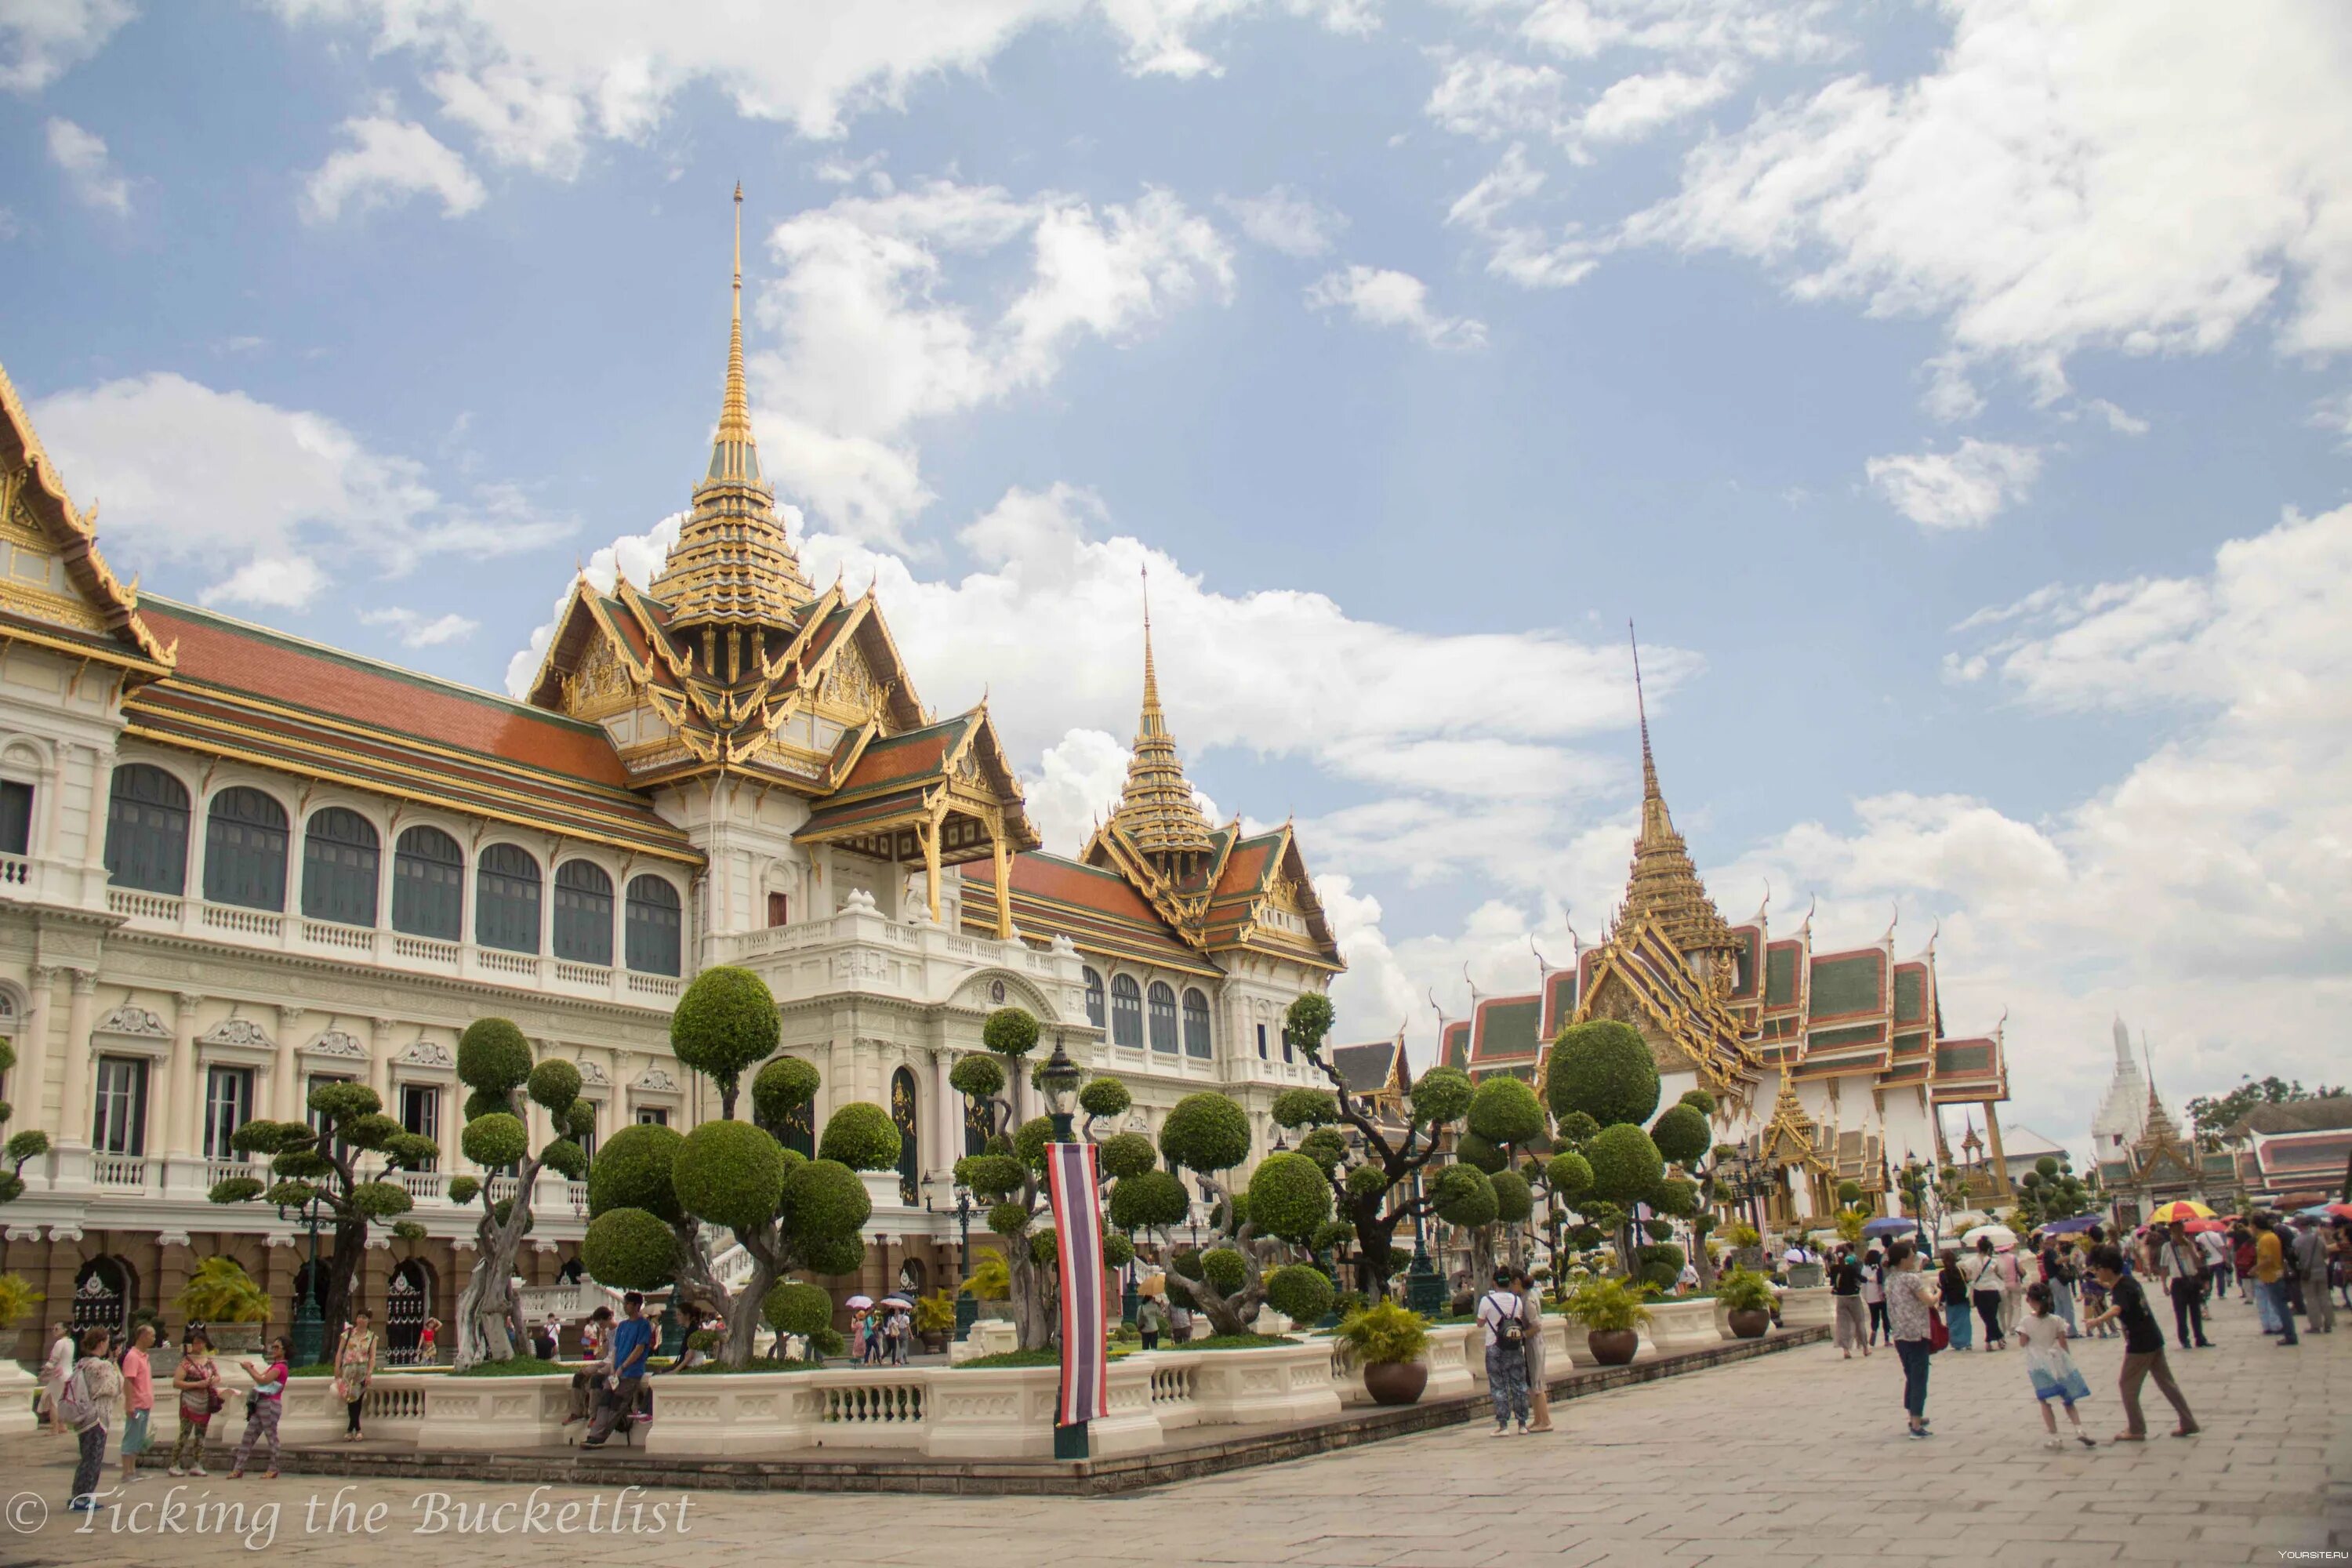 Королевский дворец в Бангкоке. Столица Тайланда. Бангкок столица Таиланда. Королевский дворец — резиденция тайского короля Бангкок.